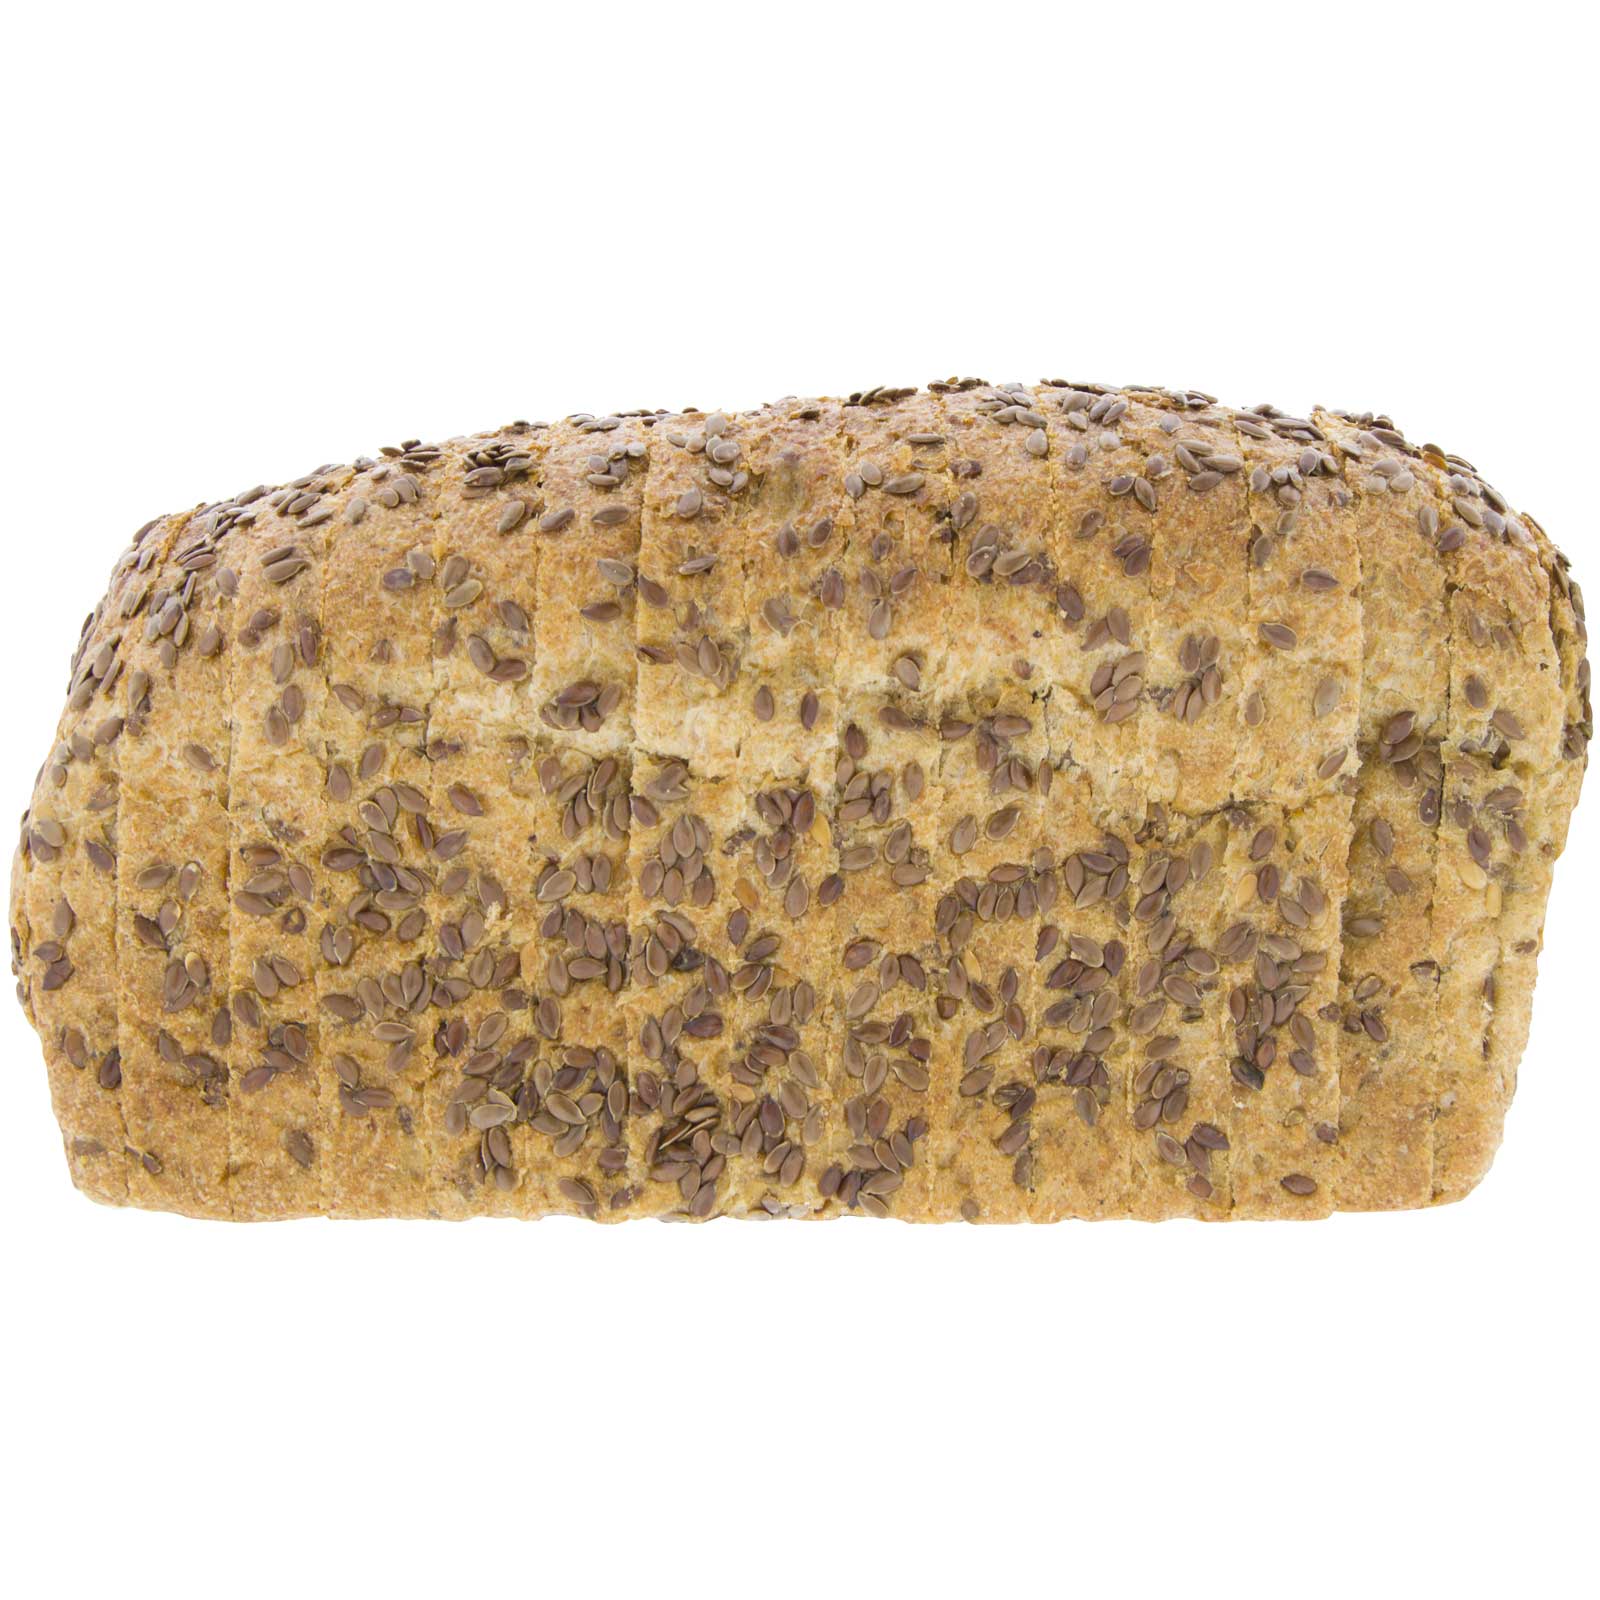 Pan de mollo de centeno integral con linhaça ecolóxica de 450 g